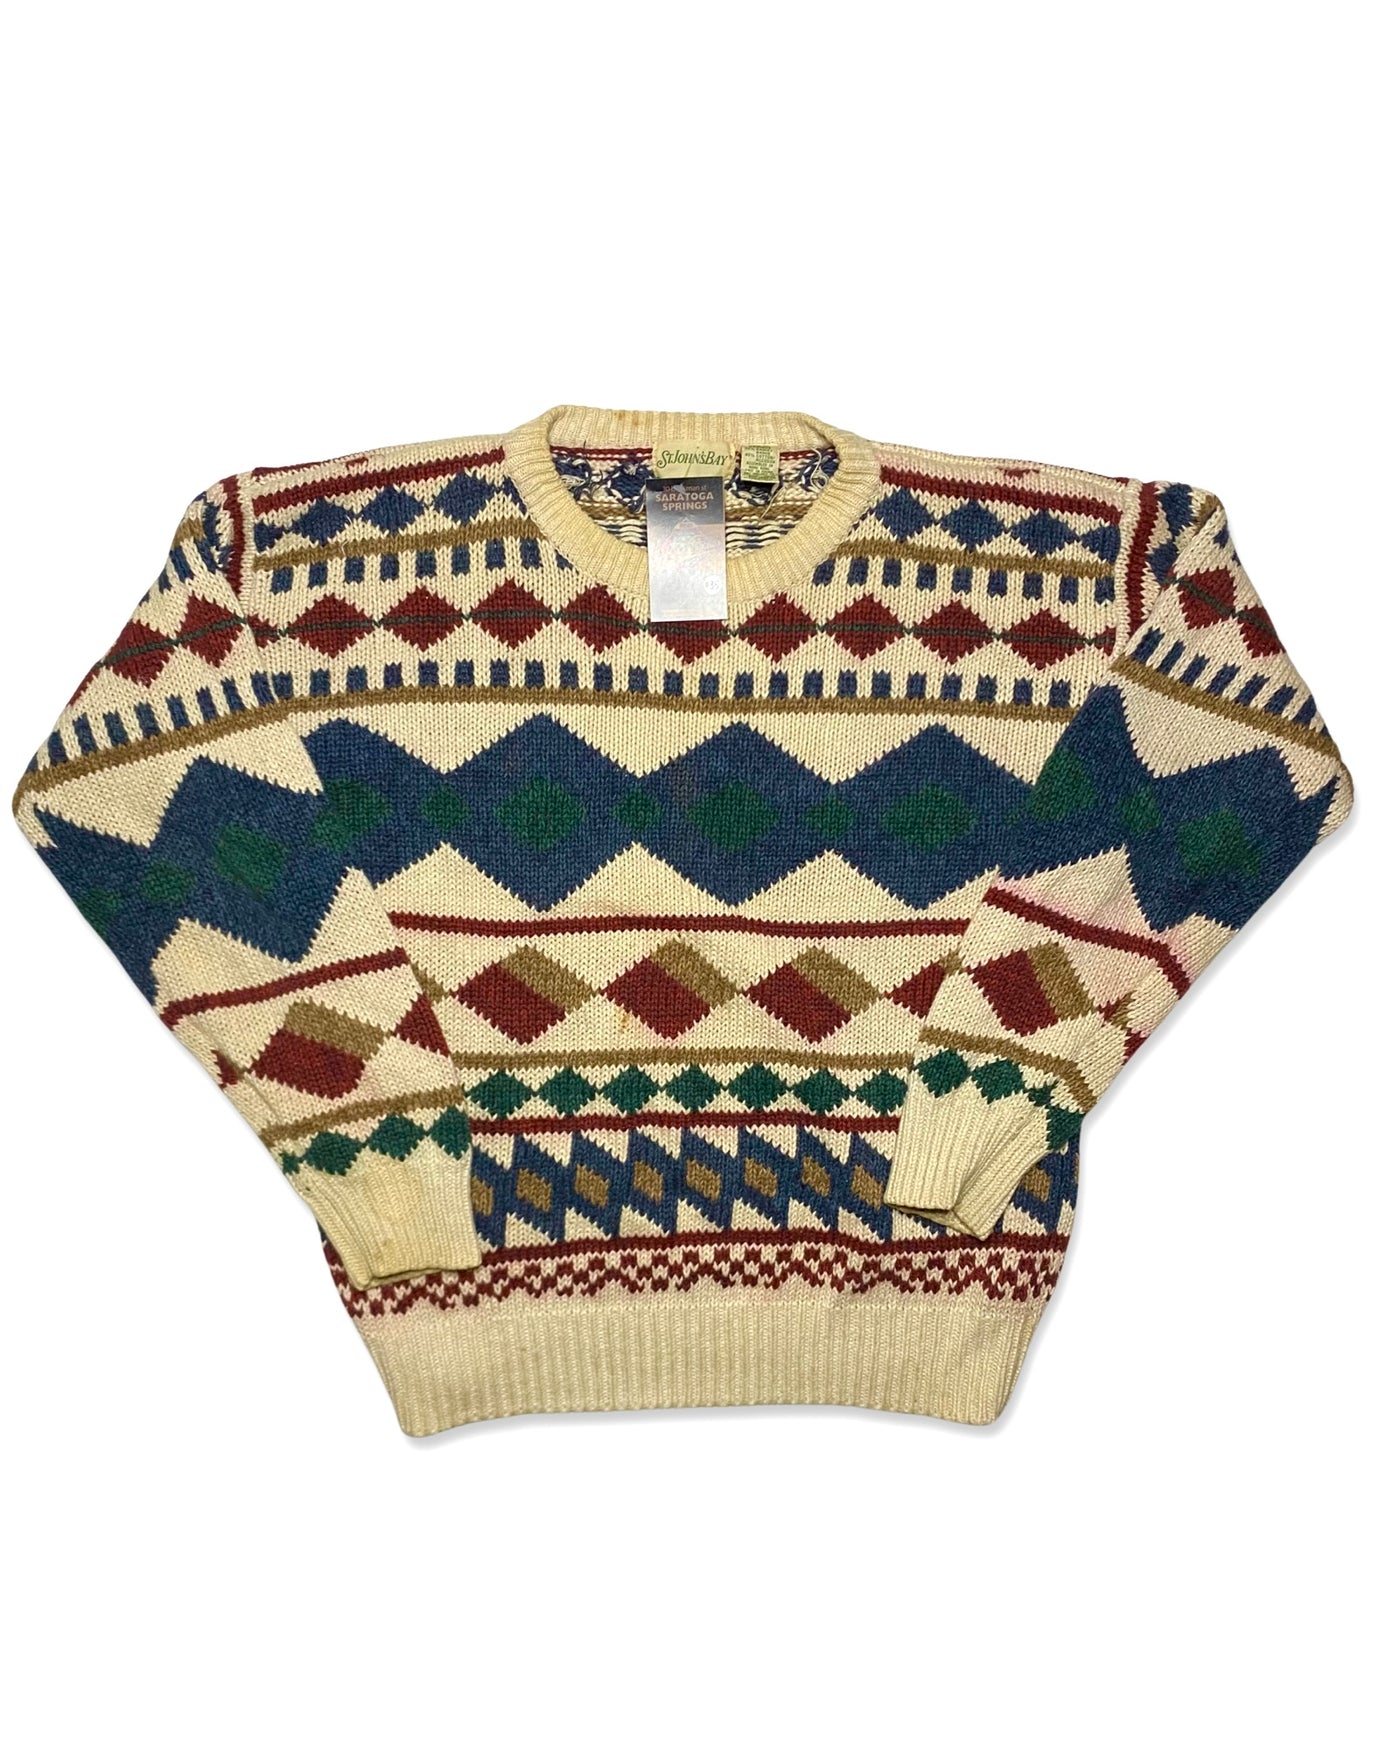 Vintage St. John’s Bay Knit Sweater